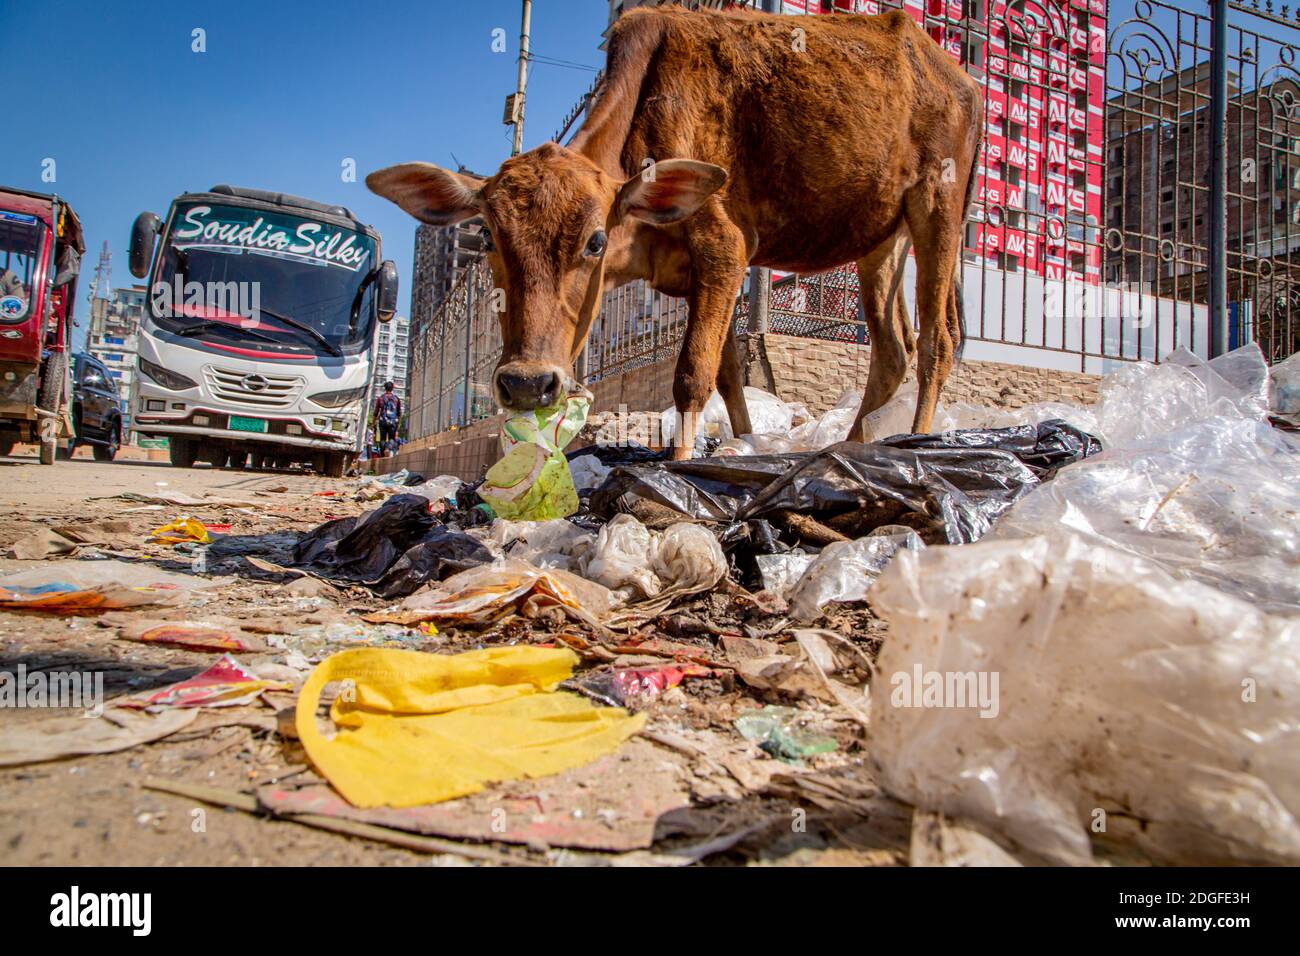 Eine unterernährte Kuh stöbert auf der Straße durch Plastikmüll auf der Suche nach Nahrung am Strand in Cox's Bazar in Bangladesch. Gelegen an einem der längsten Strände der Welt, ist die Gegend seit Jahren ein Touristenziel. Mit den Abwässern und dem Müll als offensichtlichem Nachdenken steht die Infrastruktur in der Stadt unter neuem Druck mit einer schnell wachsenden Bevölkerung. Die Region beherbergt auch die weltweit größten Flüchtlingslager für die Rohingyas, die aus Myanmar geflohen sind. Die NGO's, die bei der Flüchtlingskrise helfen, suchen auch nach Möglichkeiten, den aufnehmenden Gemeinschaften zu helfen. Im Stockfoto